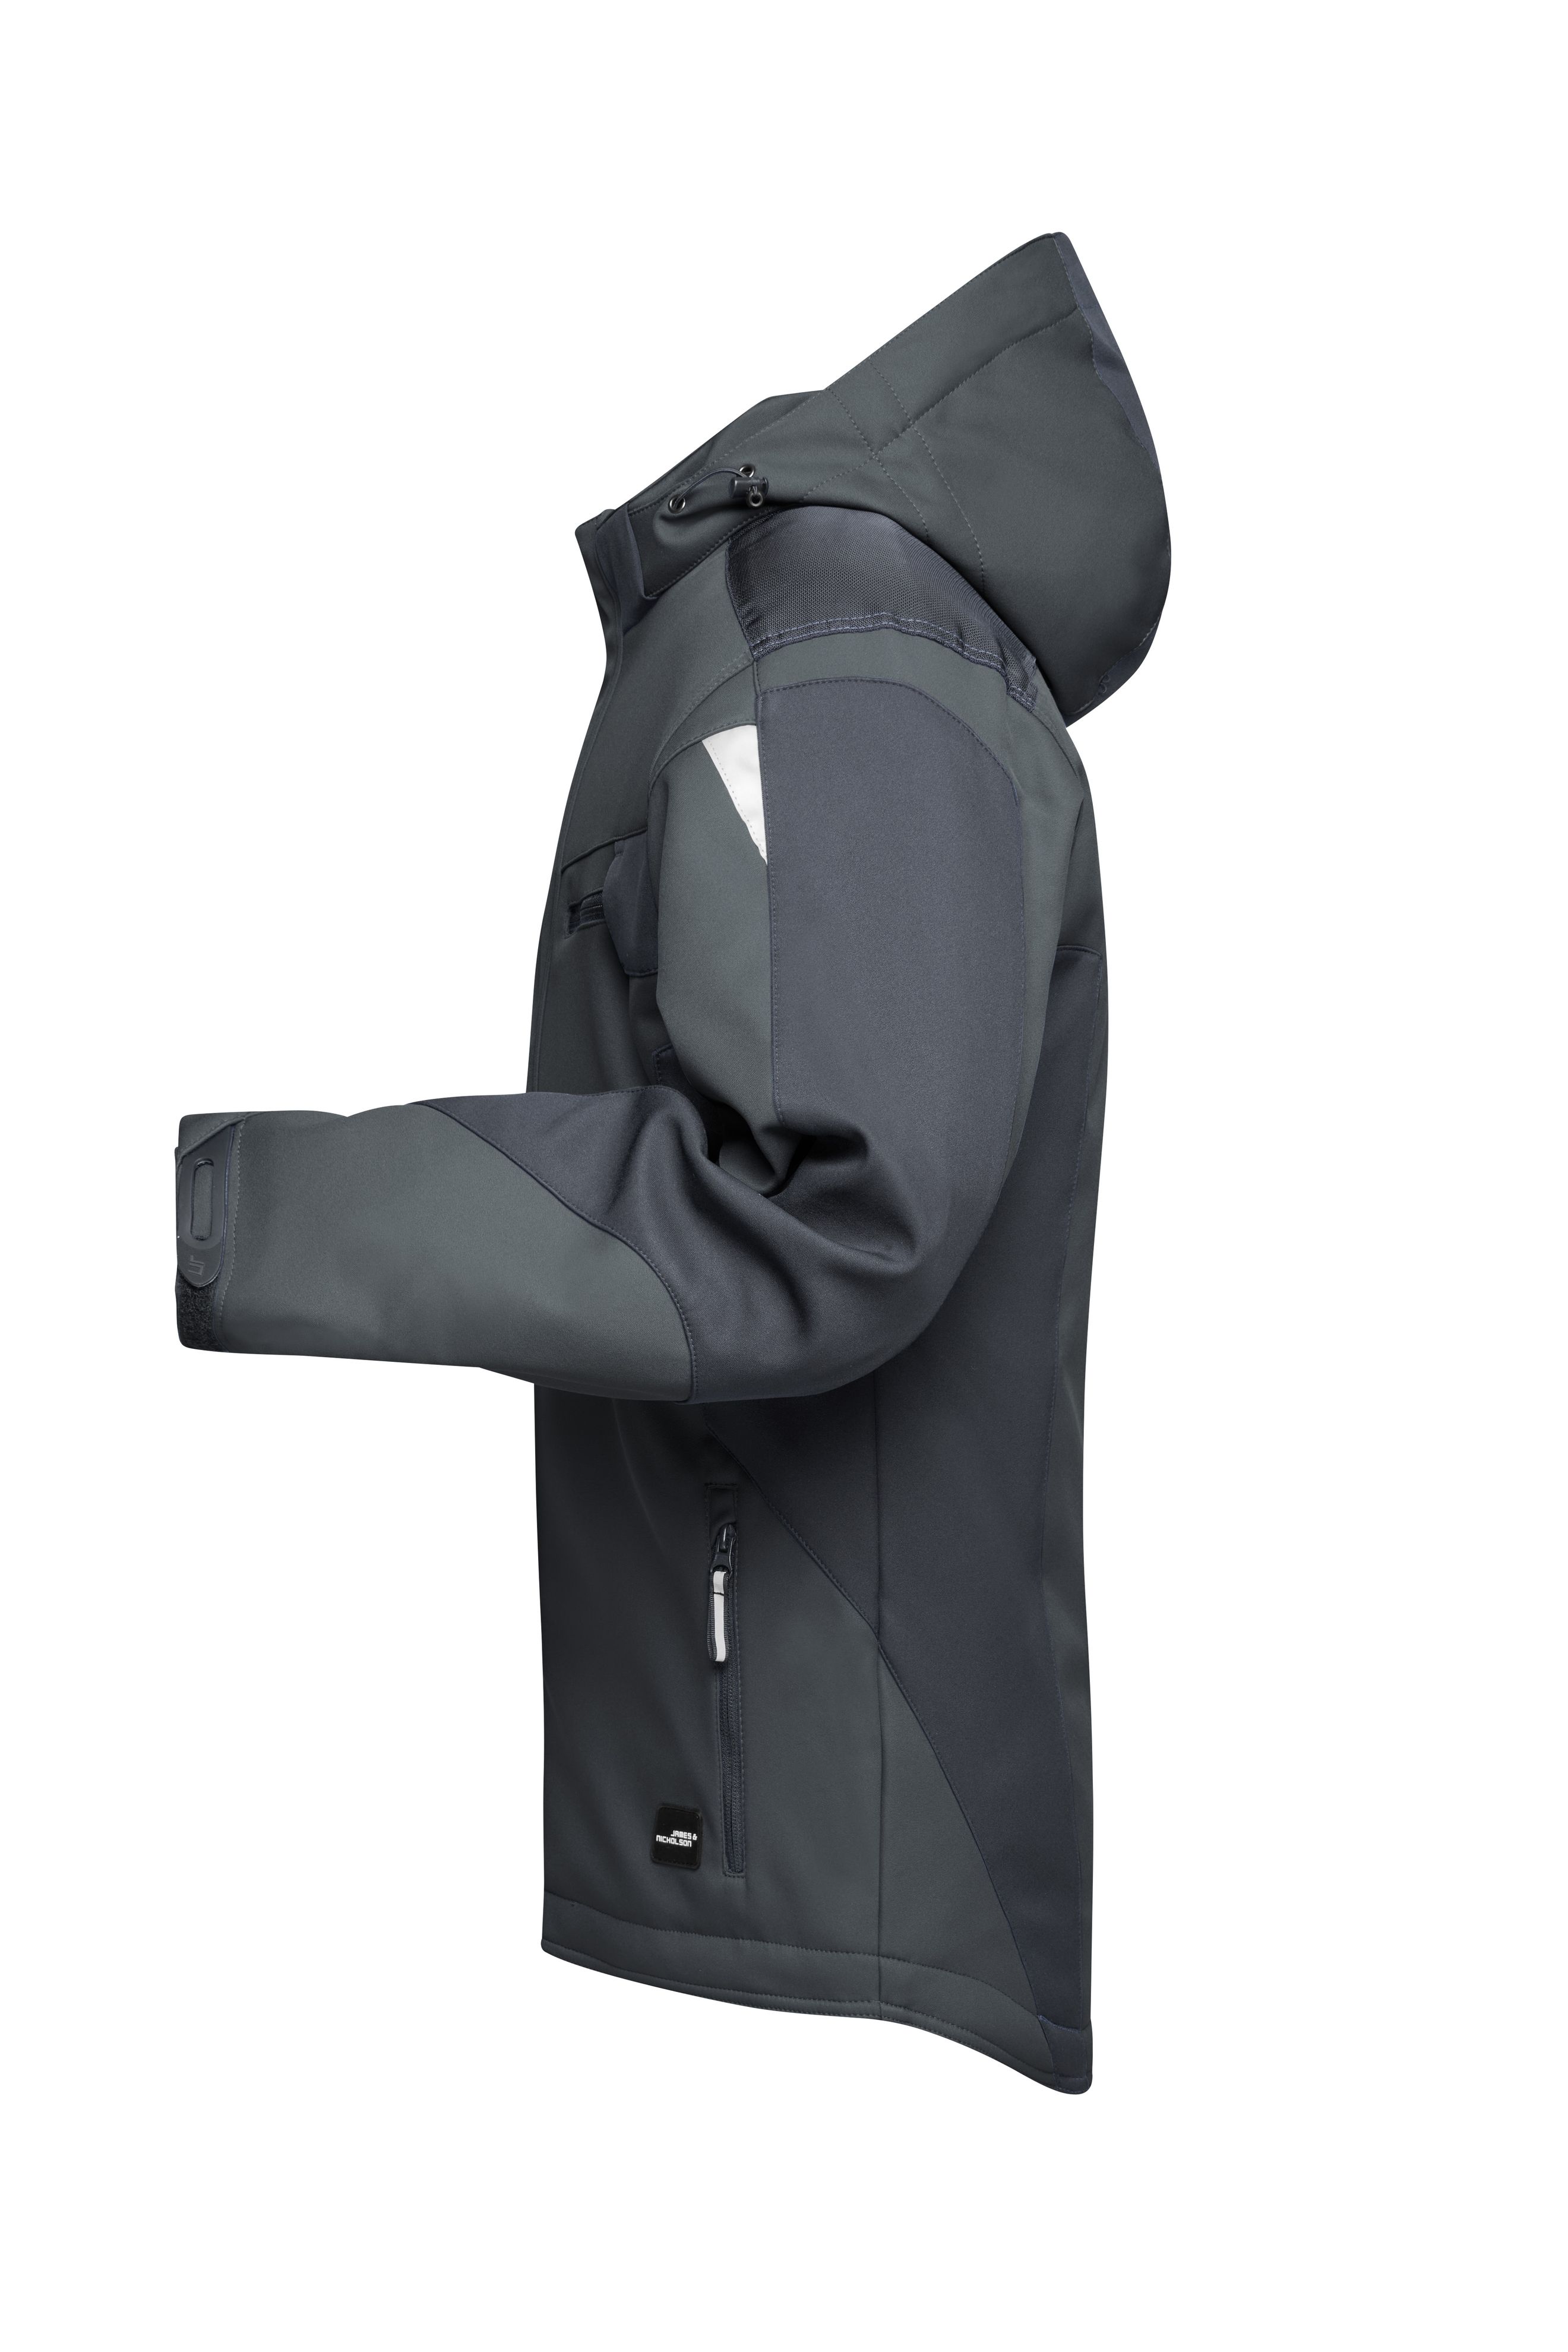 Craftsmen Softshell Jacket - STRONG - JN824 Professionelle Softshelljacke mit warmem Innenfutter